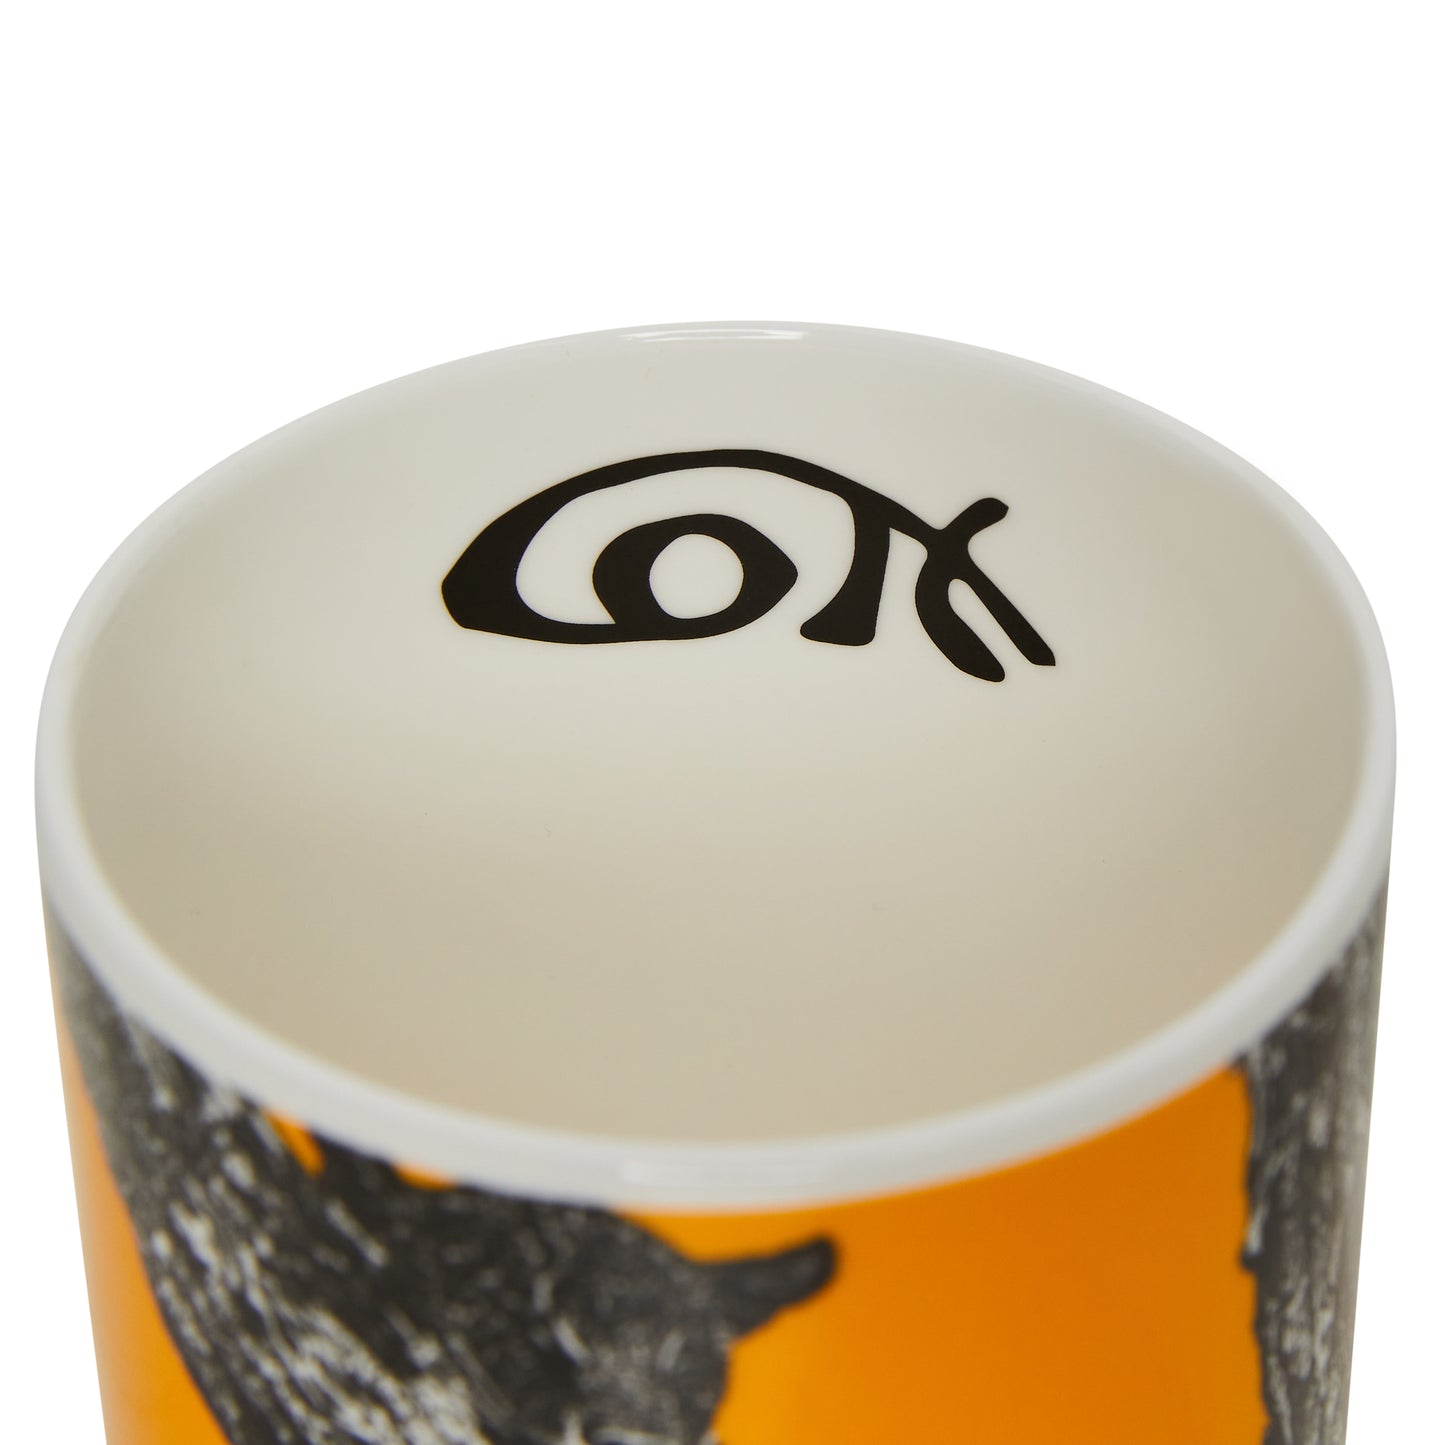 Bone china mug interior, white interior with detail of 'Cott' signature